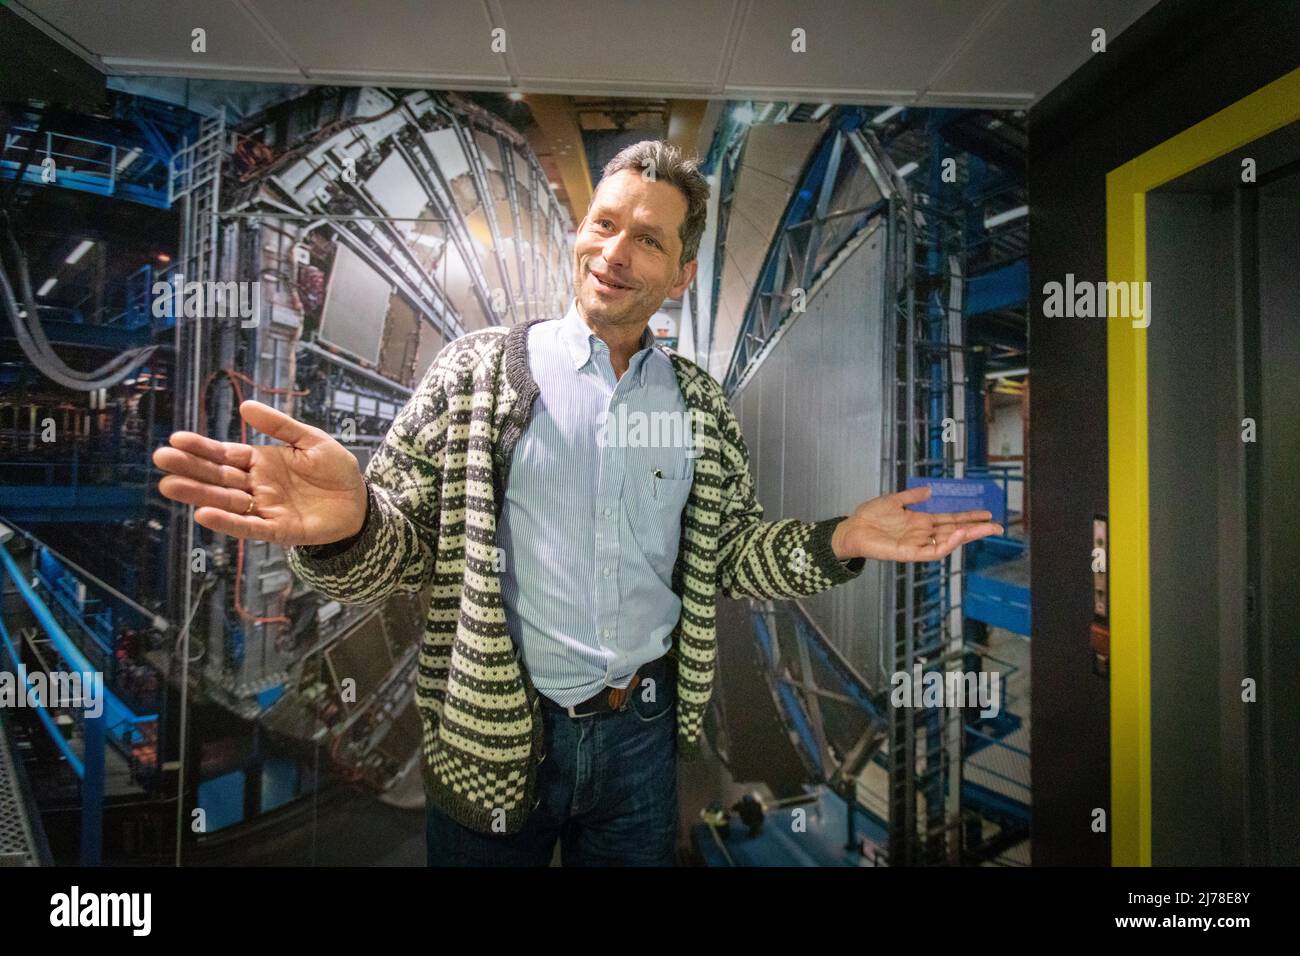 Direttore bibliotecario al CERN, norvegese Jens Vigen, spiega l'affascinante calendario che ha portato il centro di ricerca ad oggi. Gli scienziati e gli ingegneri del CERN si stanno preparando per il prossimo grande capitolo della storia del più grande laboratorio di ricerca del mondo. Sono in corso piani per costruire un altro collider di particelle quattro volte più grande dell'esistente LHC - Large Hadron Collider. Foto Stock